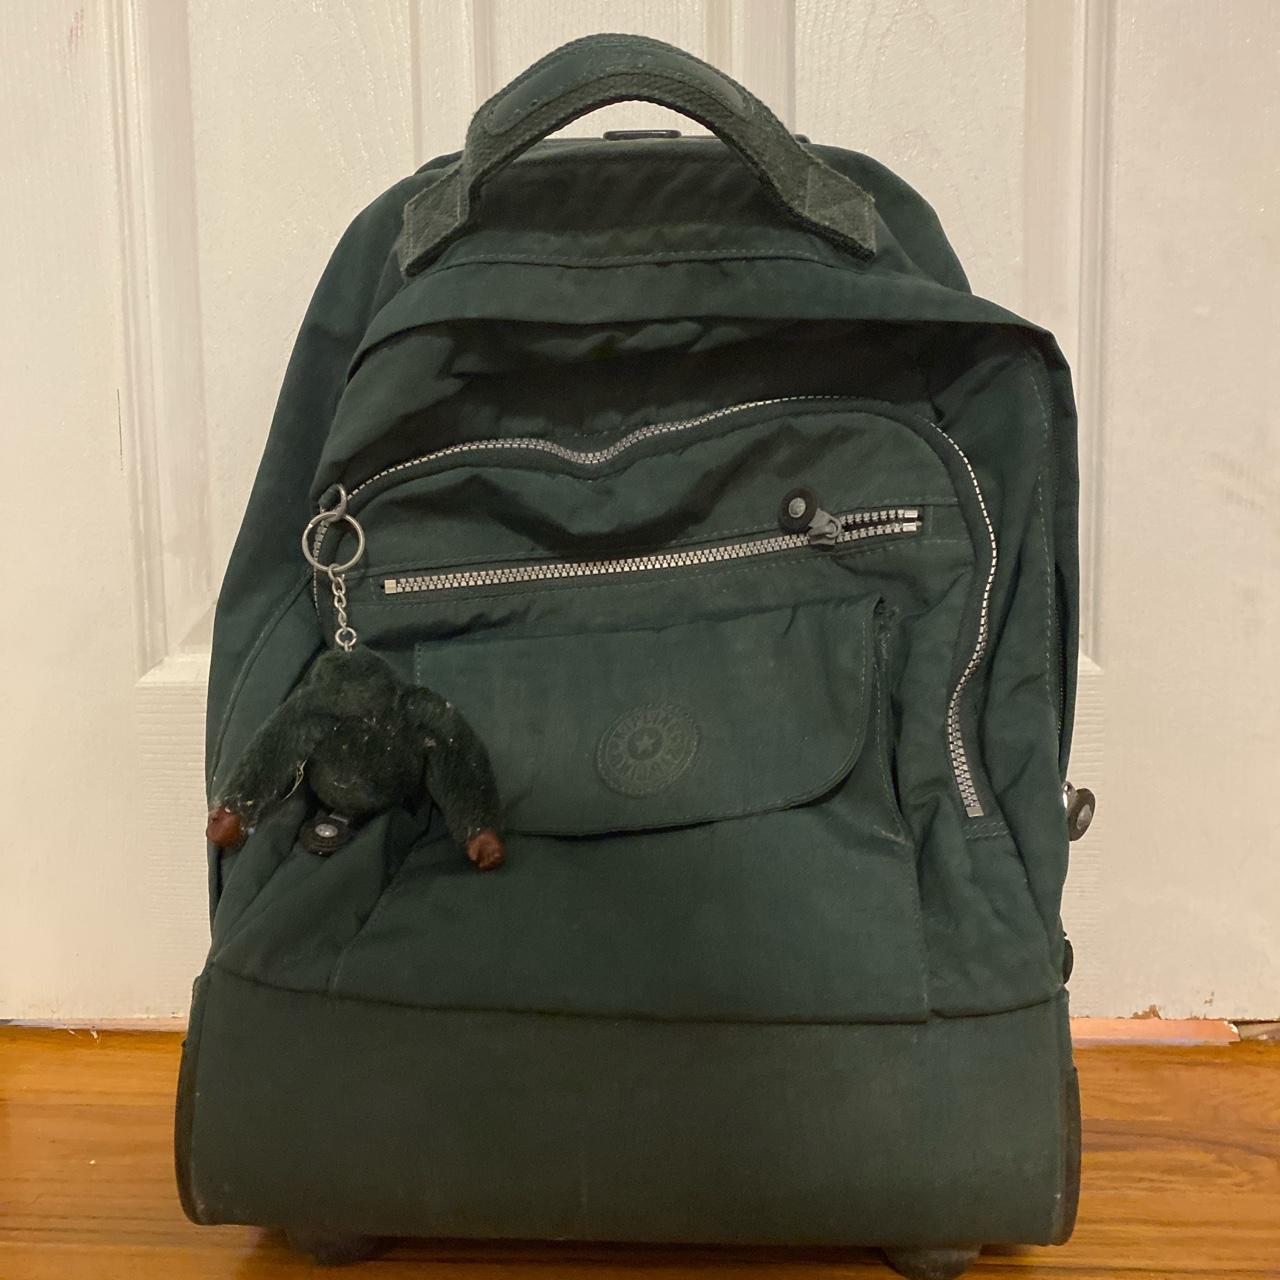 Olive green Kipling rolling backpack + regular... - Depop